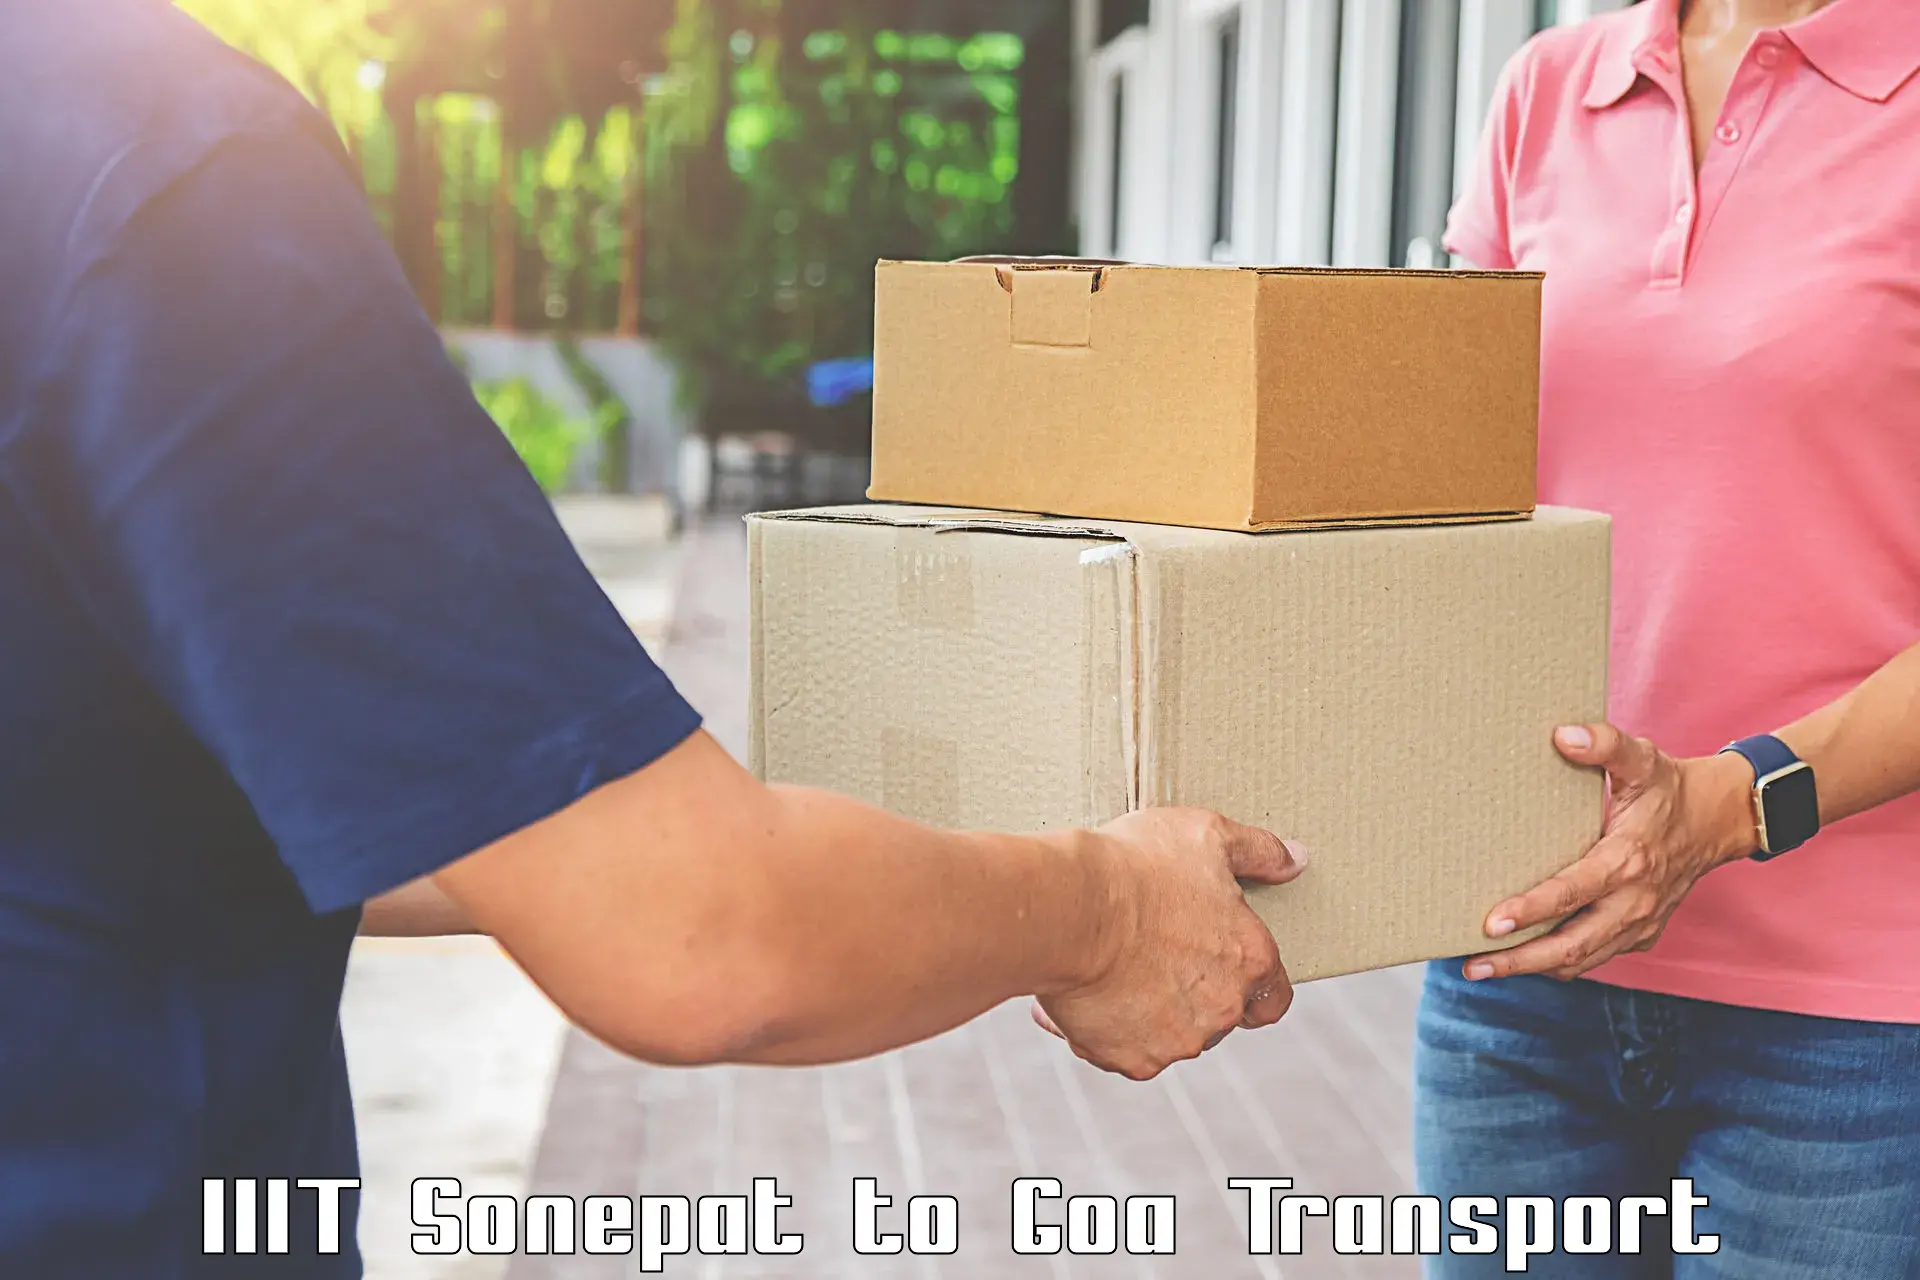 Cargo transportation services IIIT Sonepat to IIT Goa